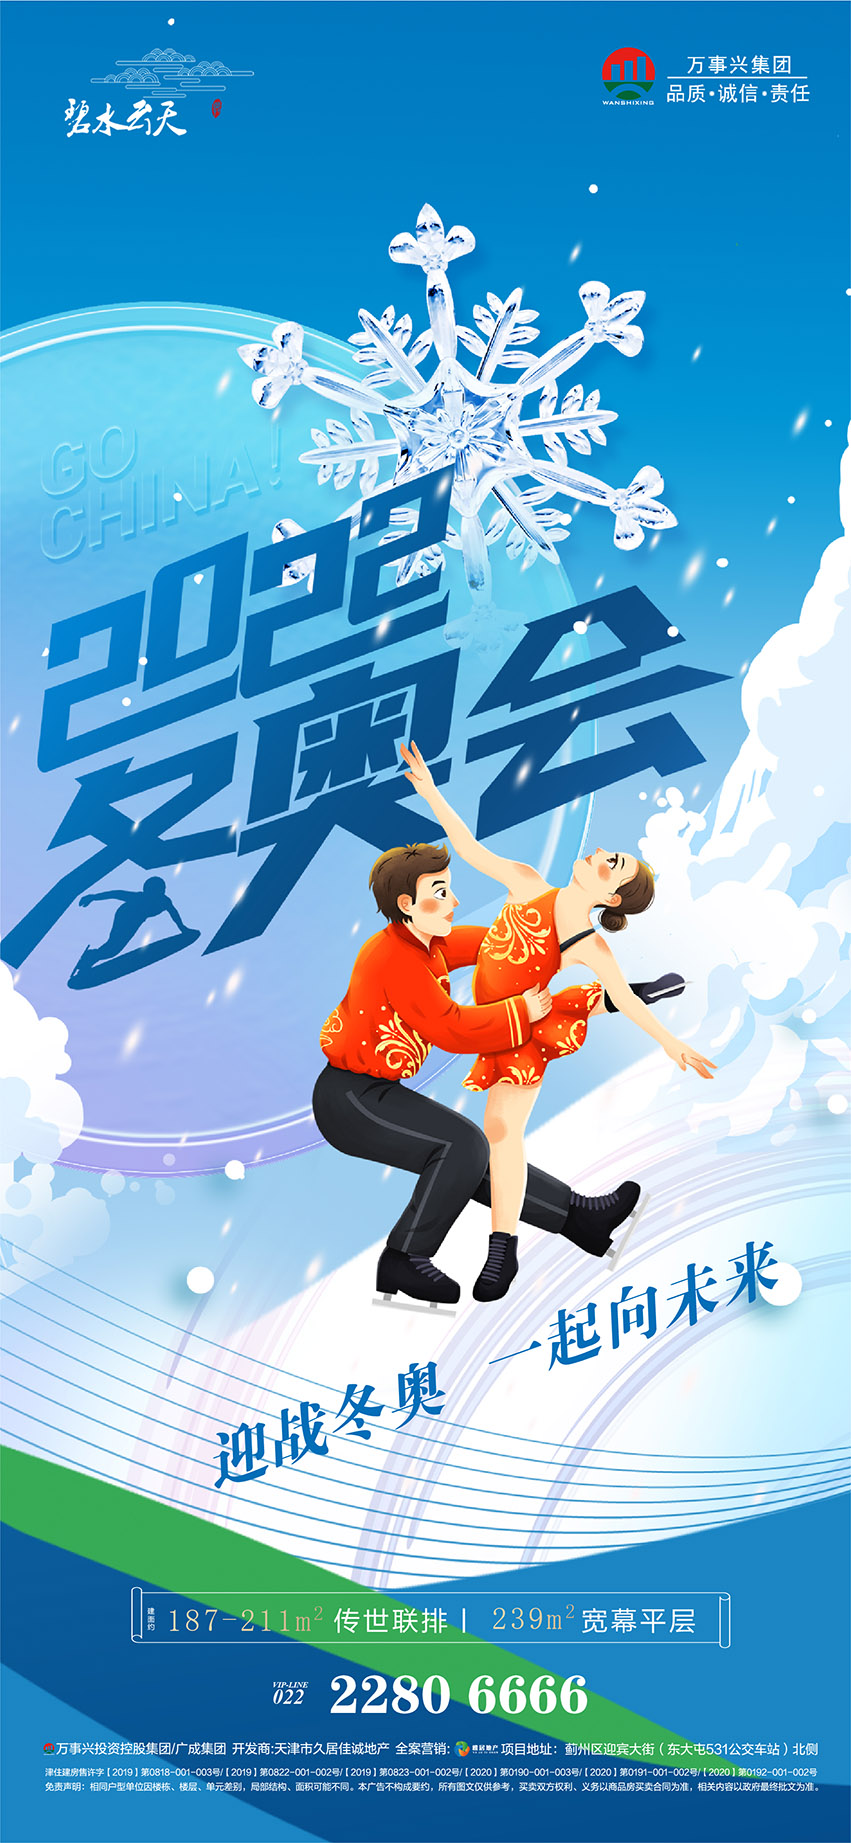 北京冬奥会助威加油系列海报-07.jpg